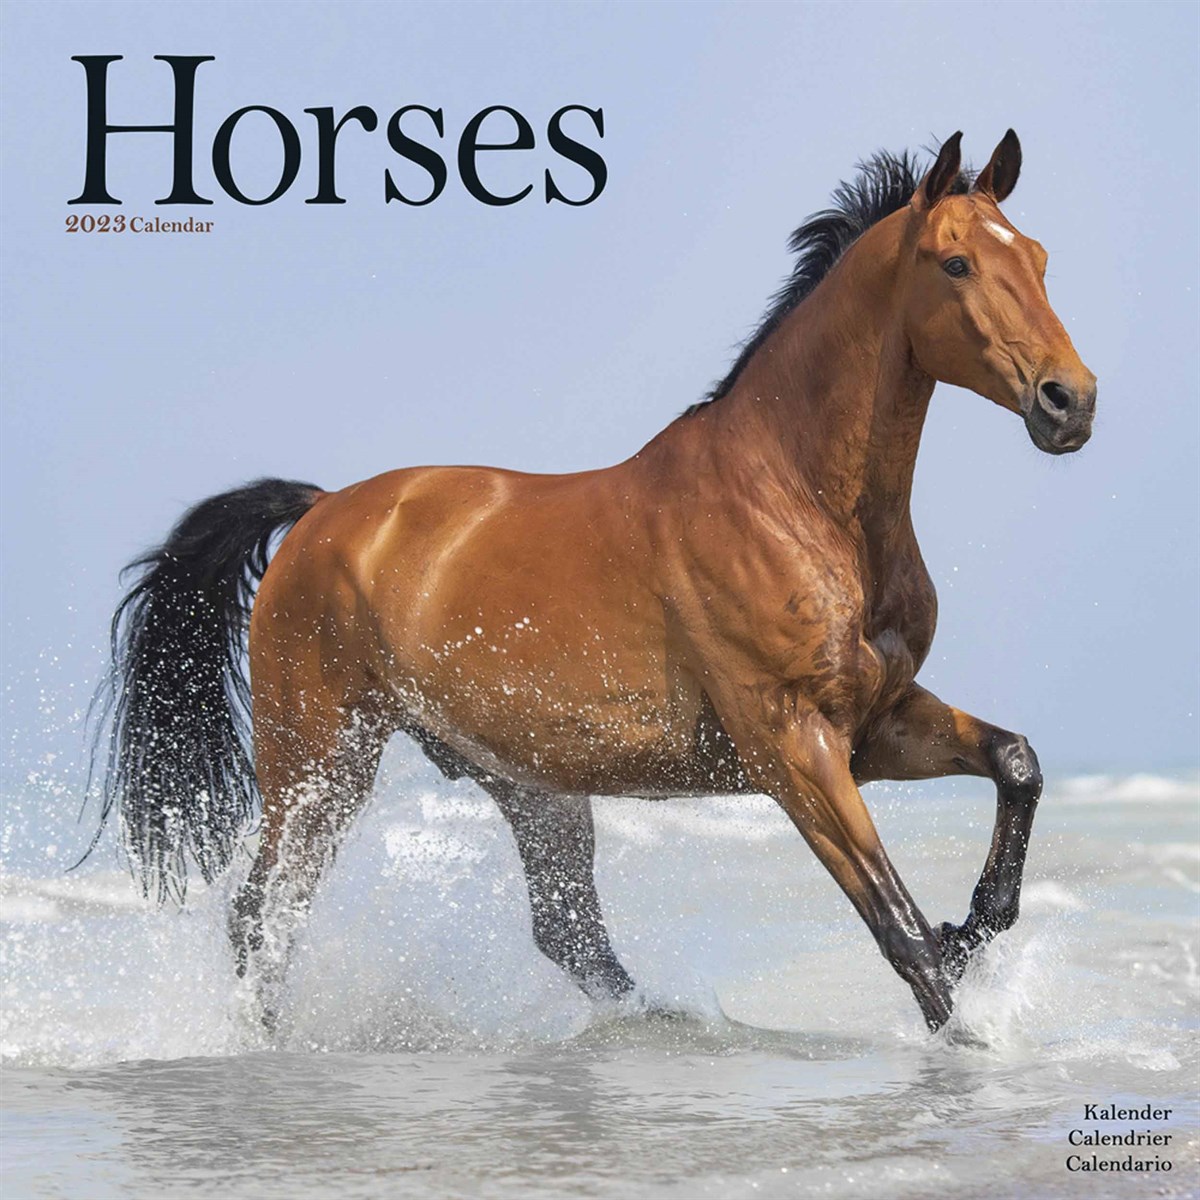 Horses 2023 Calendars